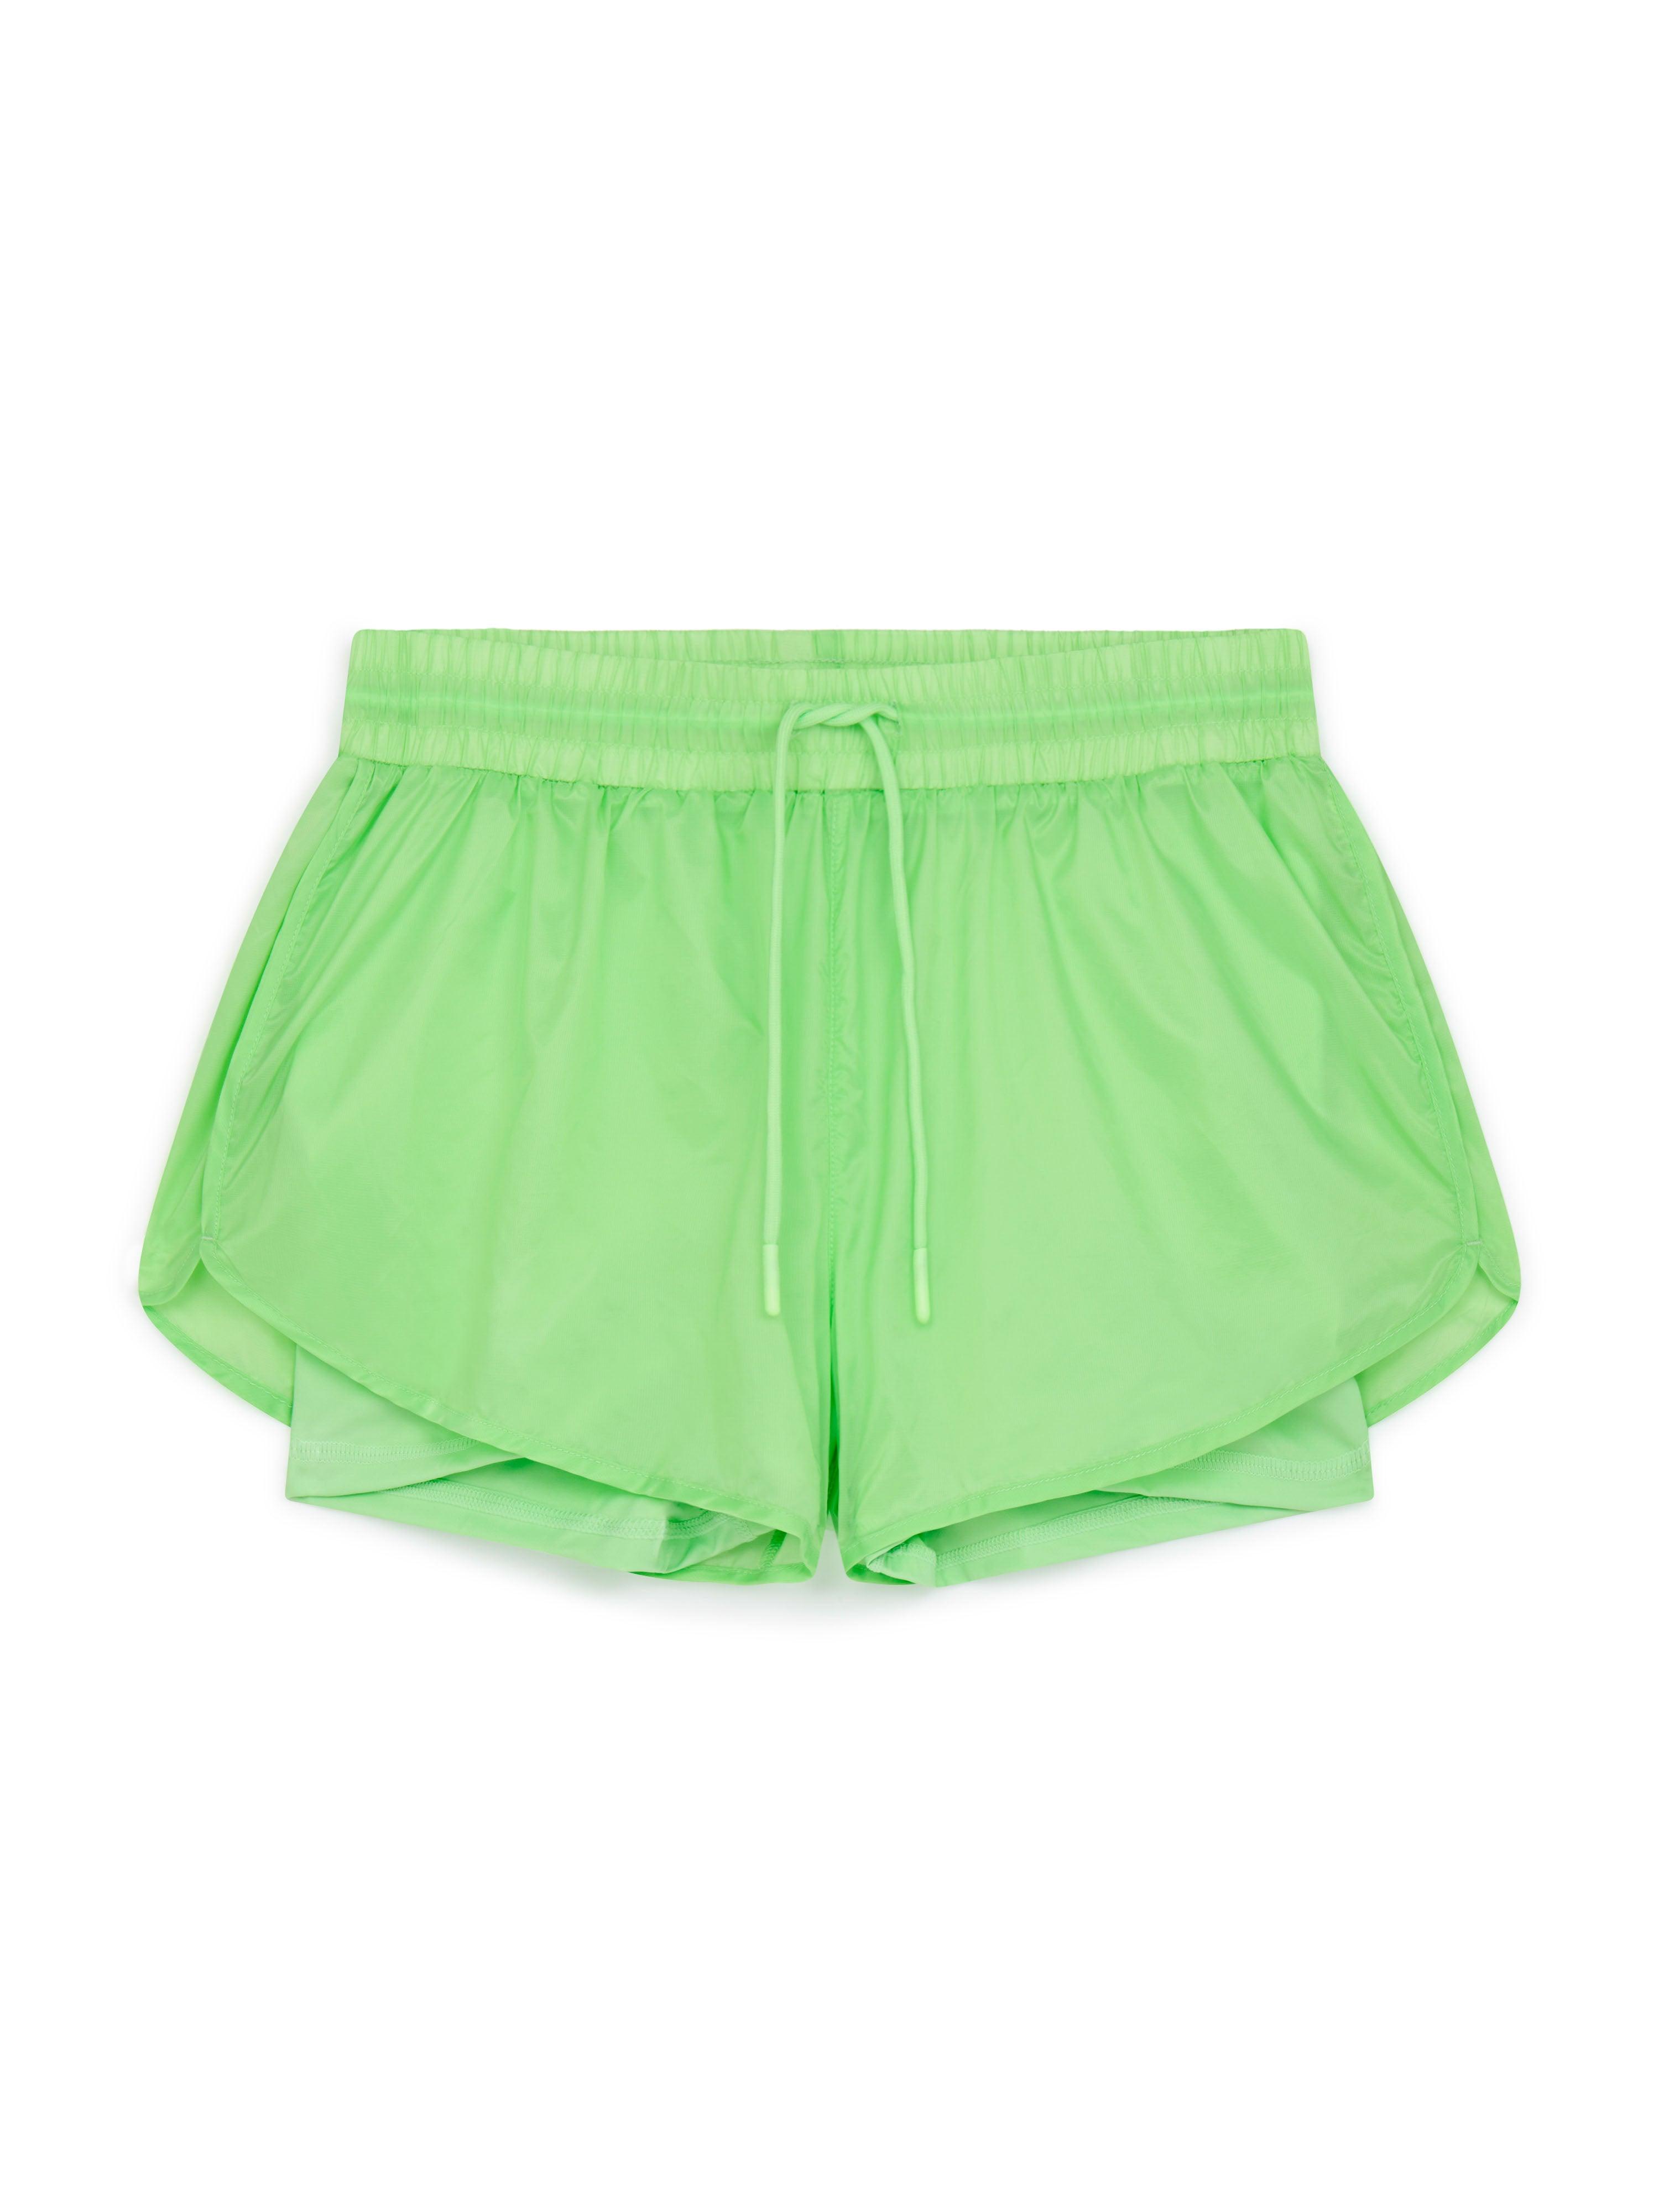 Kin Active 3 Shorts in Fresh Green